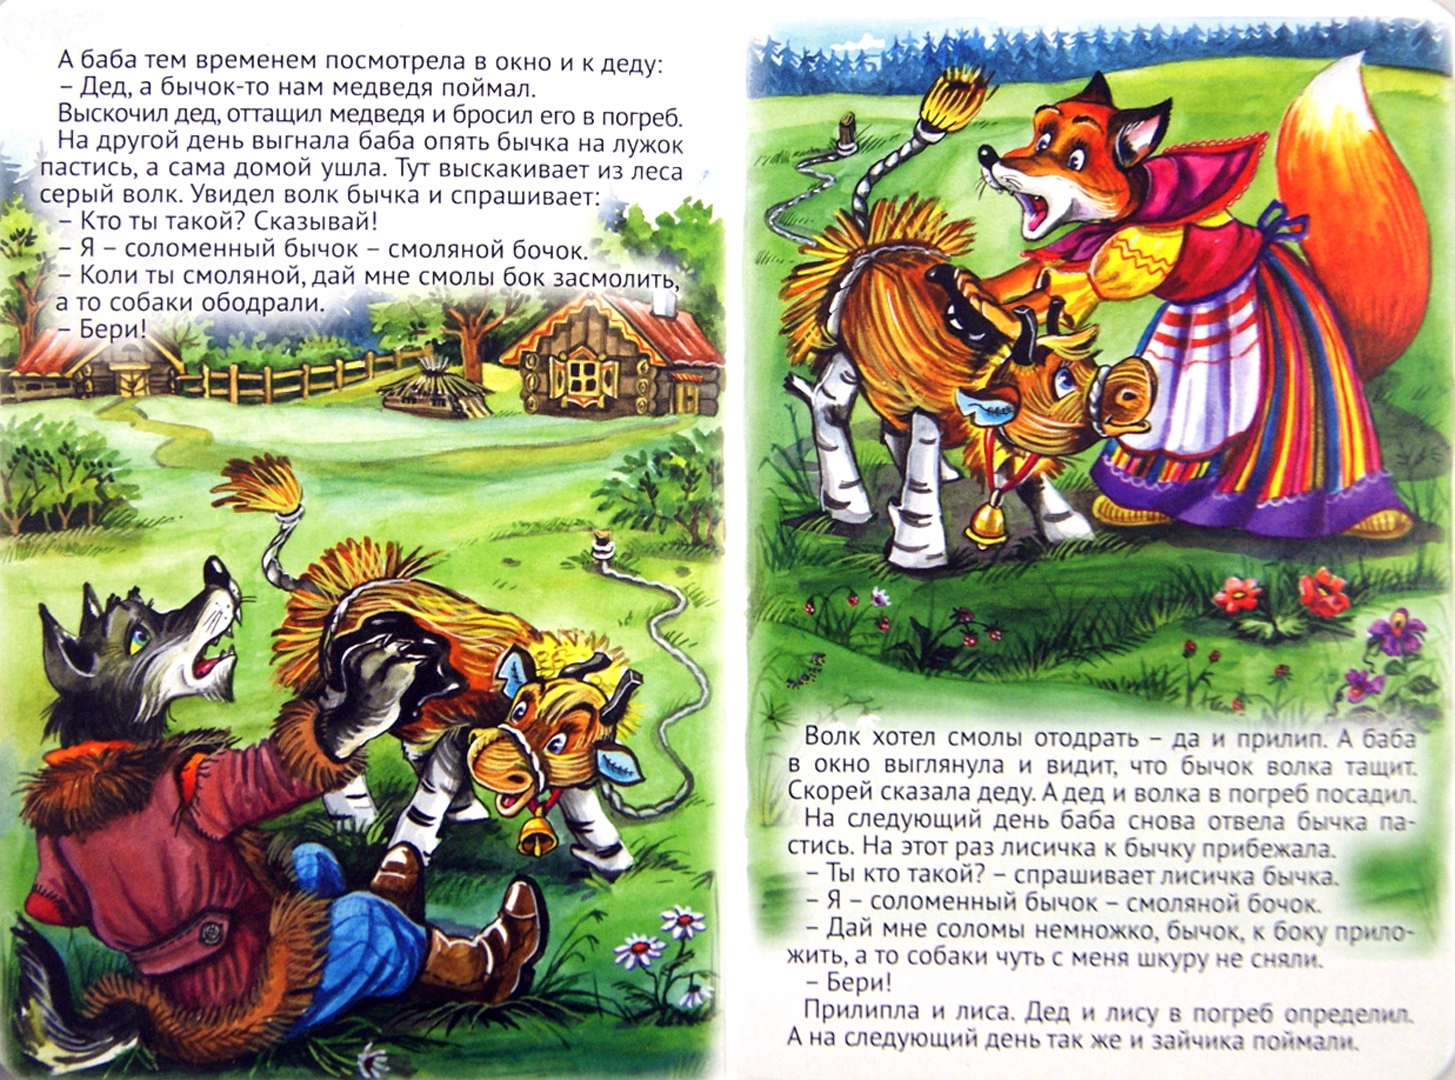 Иллюстрация 1 из 24 для Соломеный бычок - смоляной бочок | Лабиринт - книги. Источник: Лабиринт